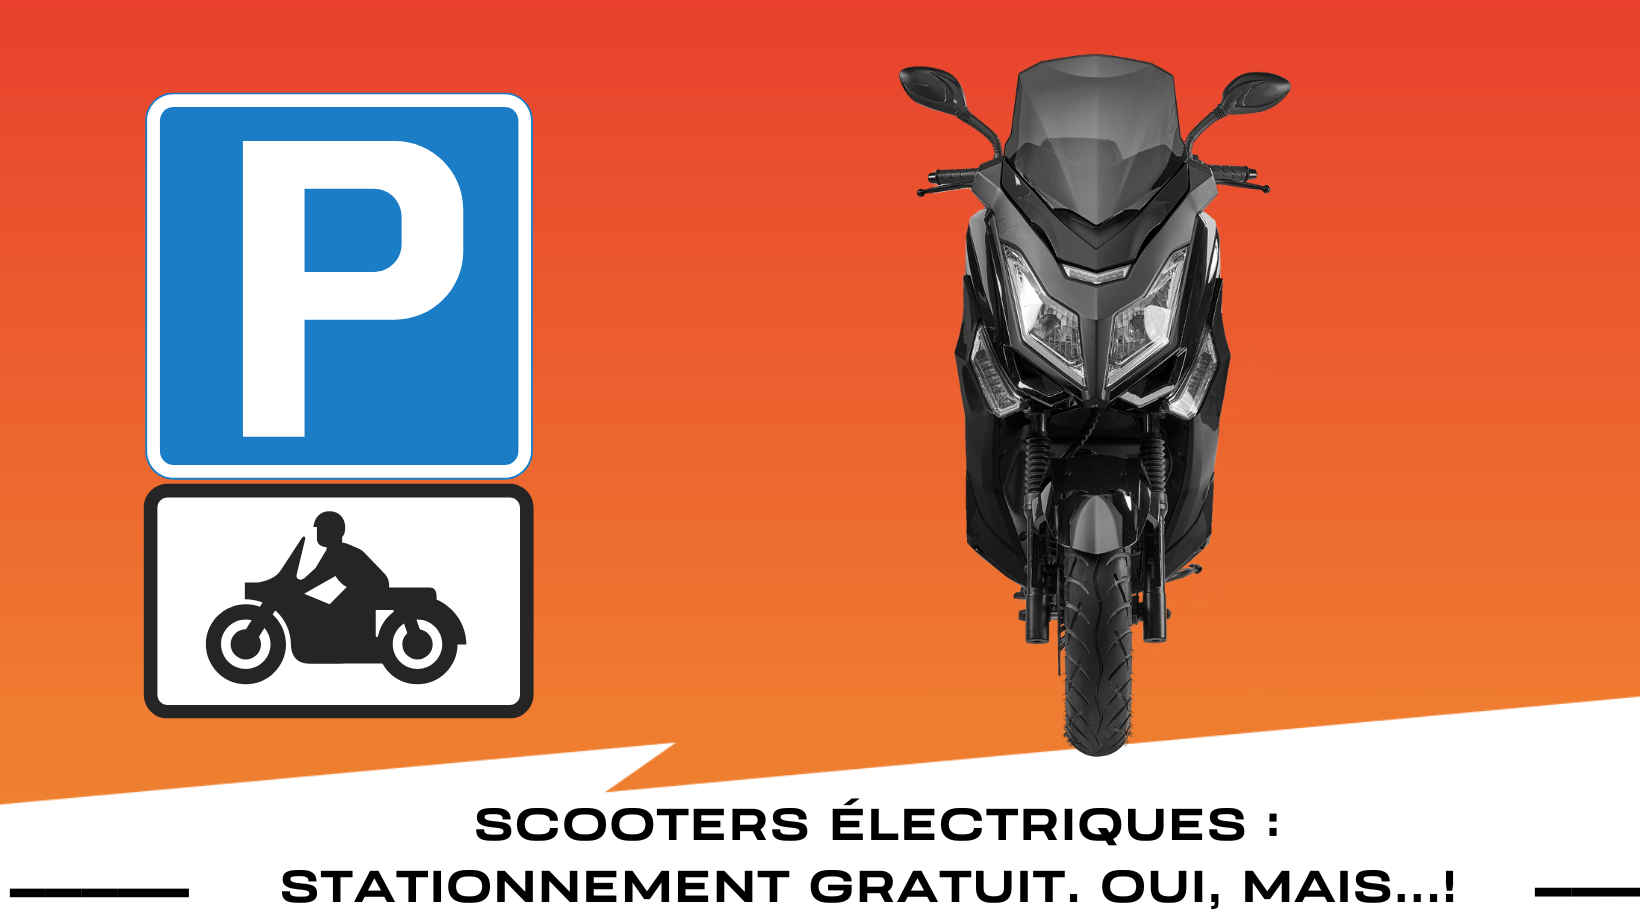 Stationnement gratuit pour les scooters électriques à Paris ? oui, mais...